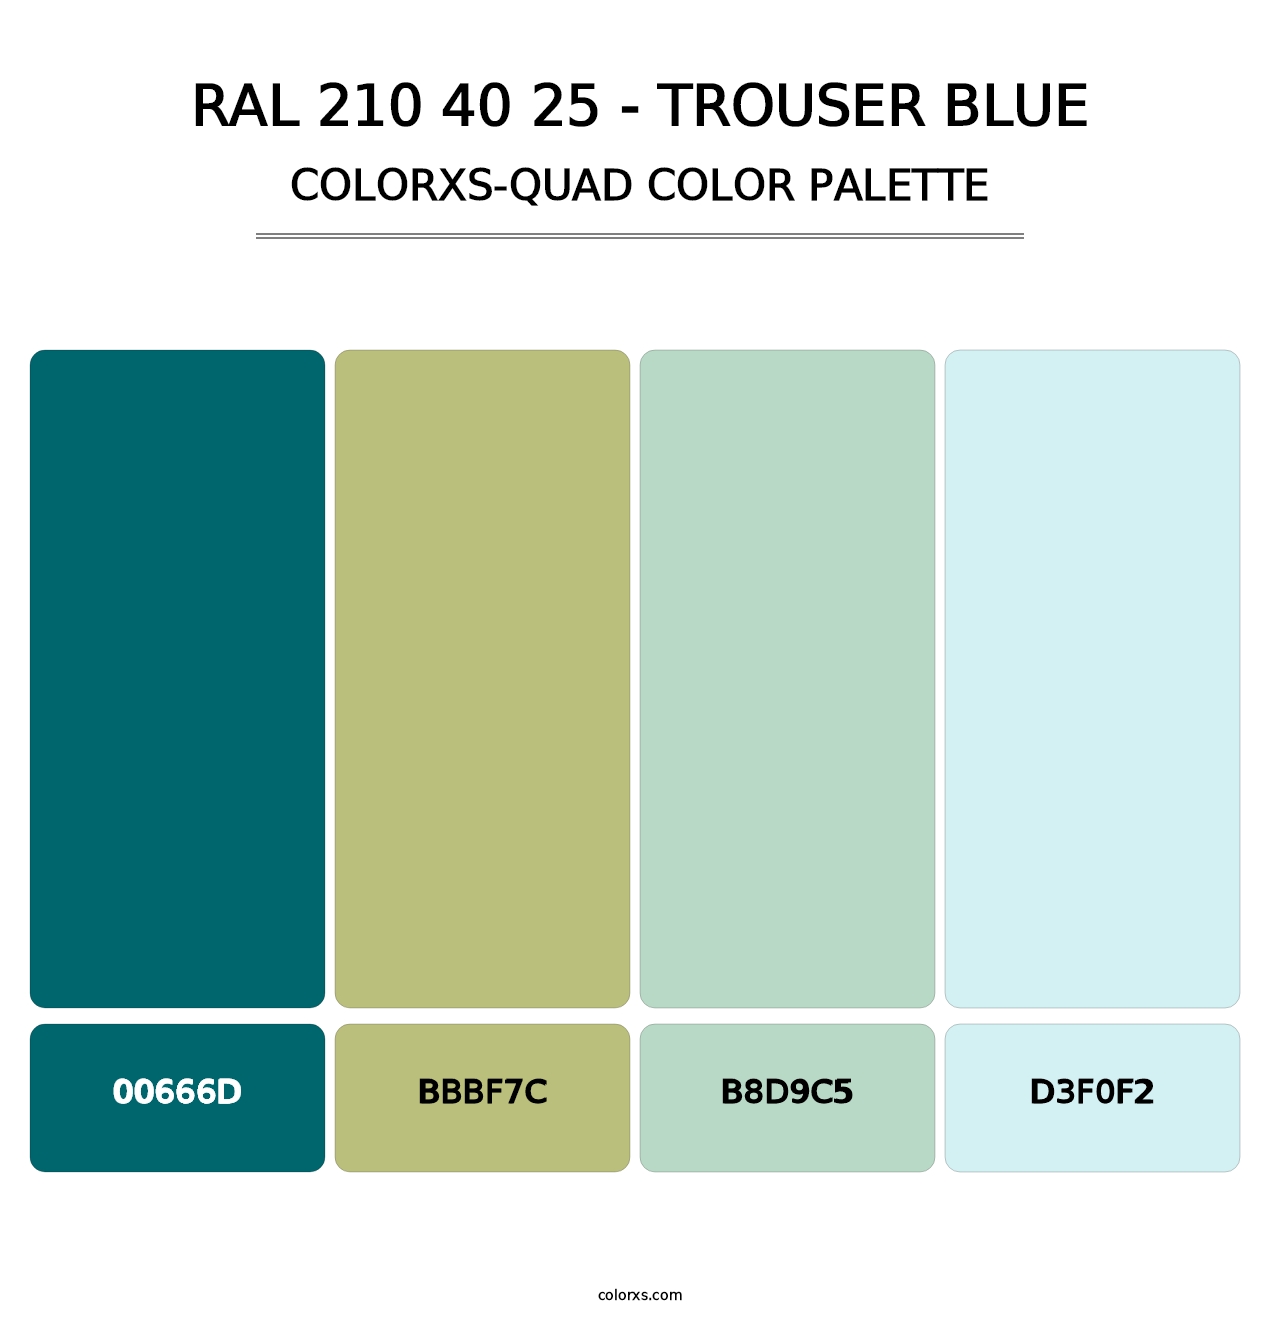 RAL 210 40 25 - Trouser Blue - Colorxs Quad Palette